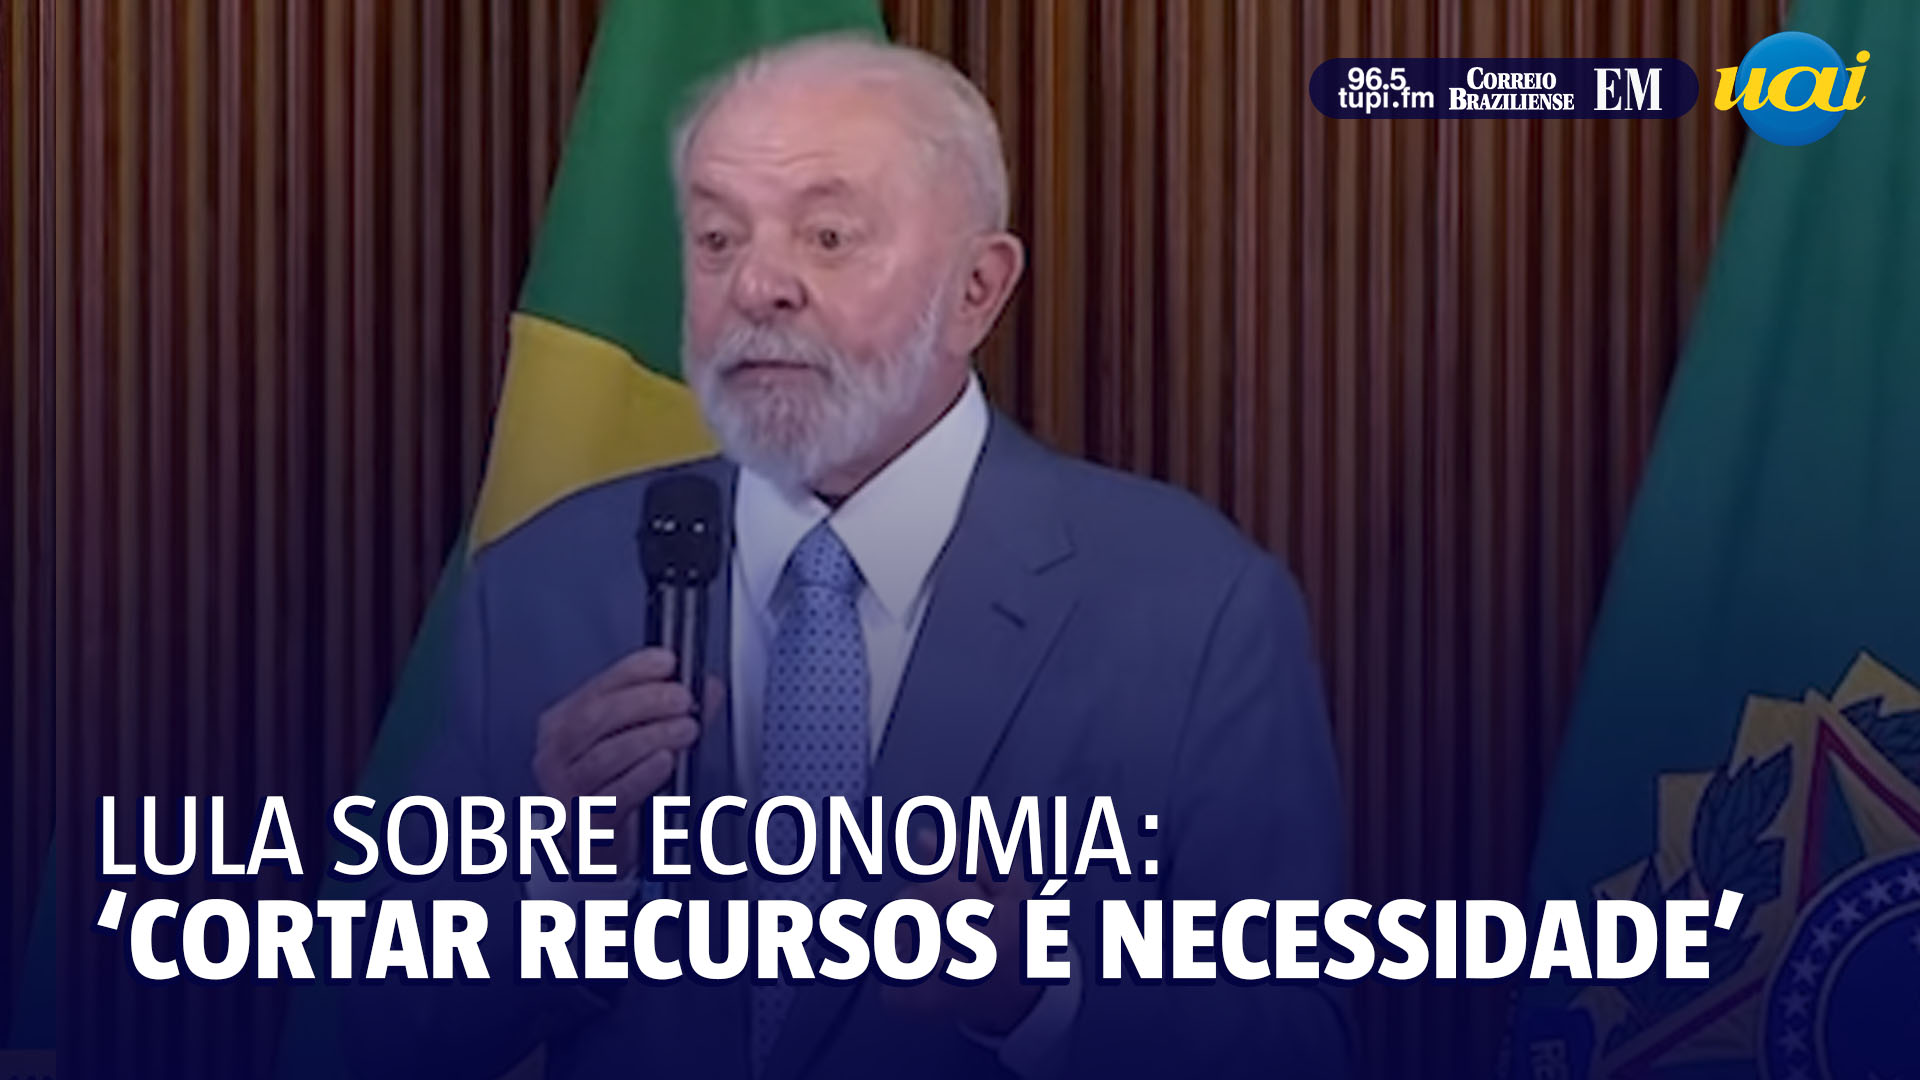 Lula sobre economia: “cortar recursos é necessidade”